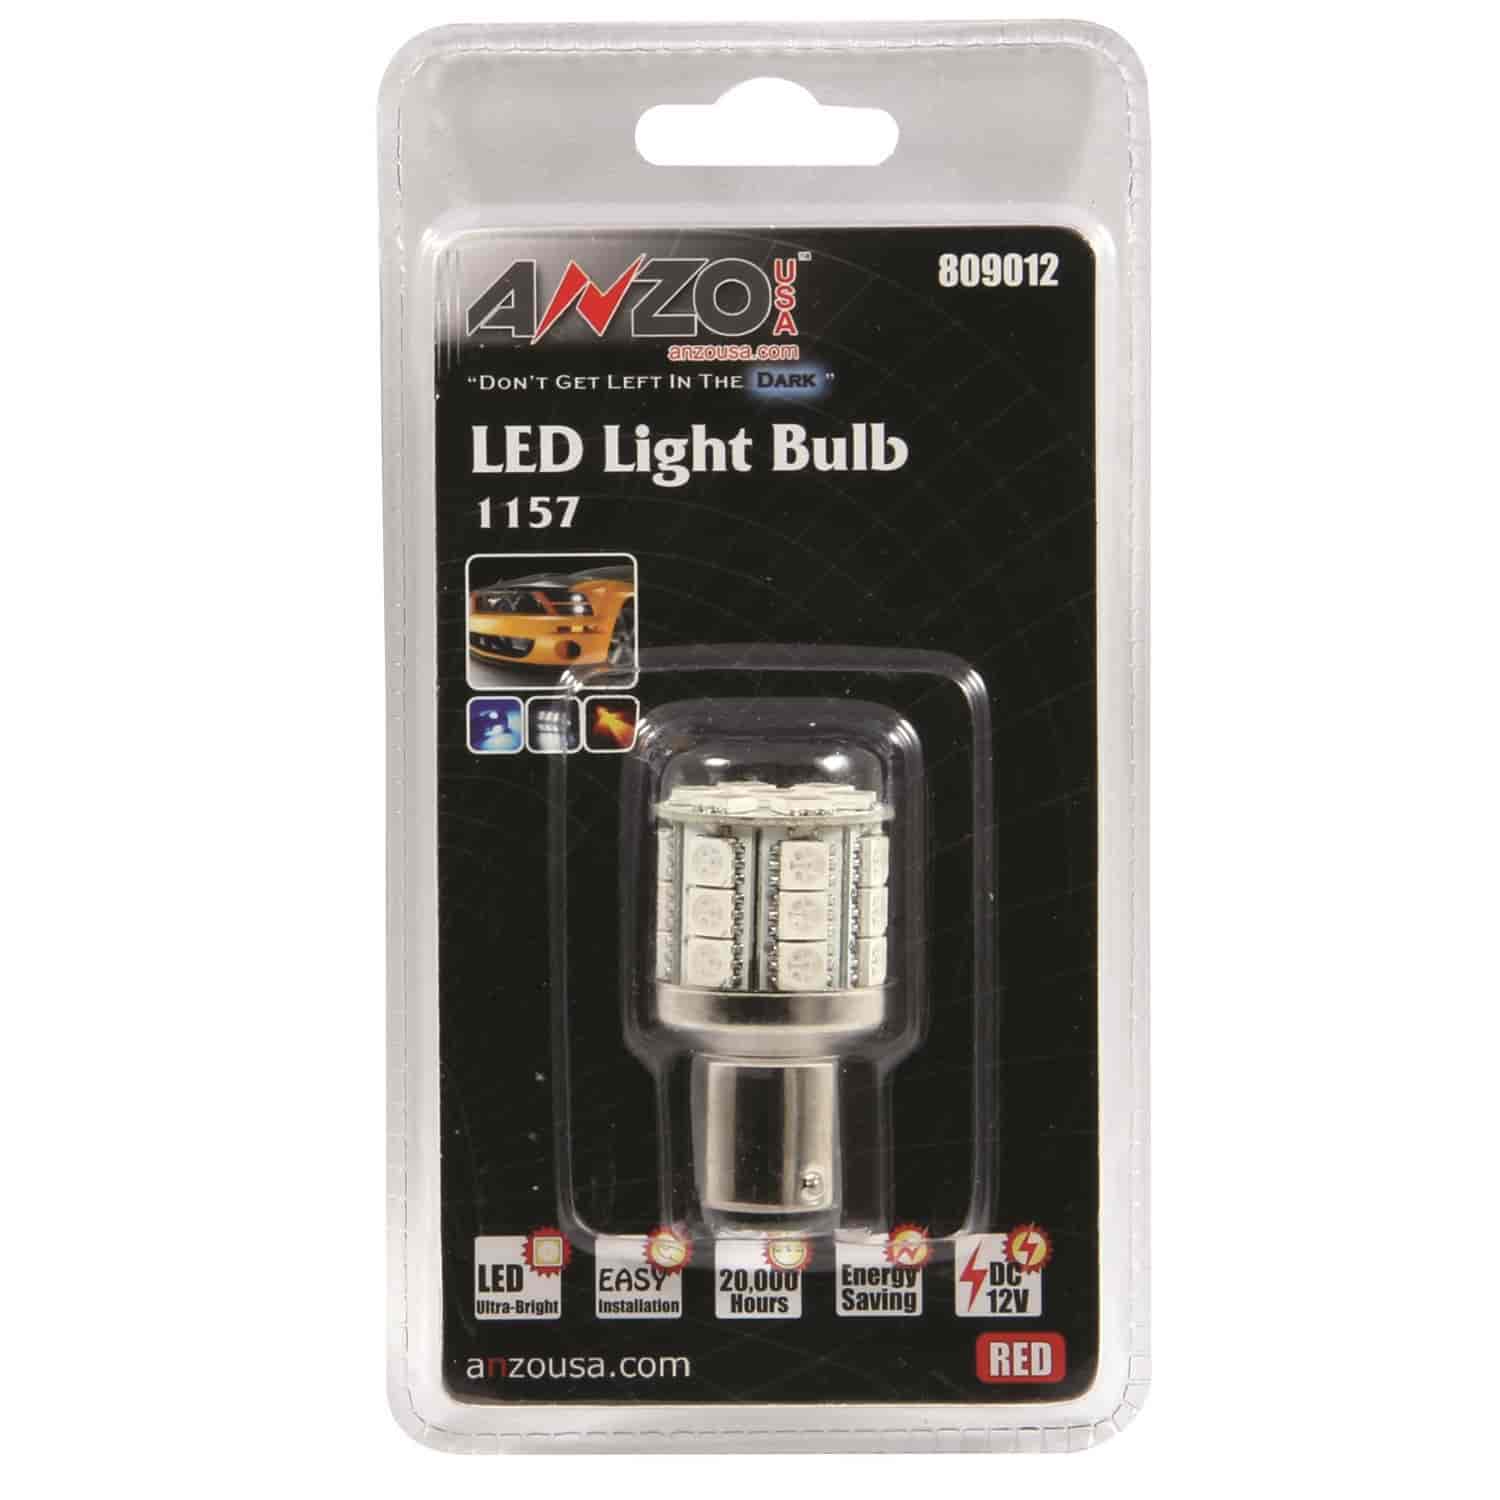 LED Universal Light Bulb 1157 Red -28